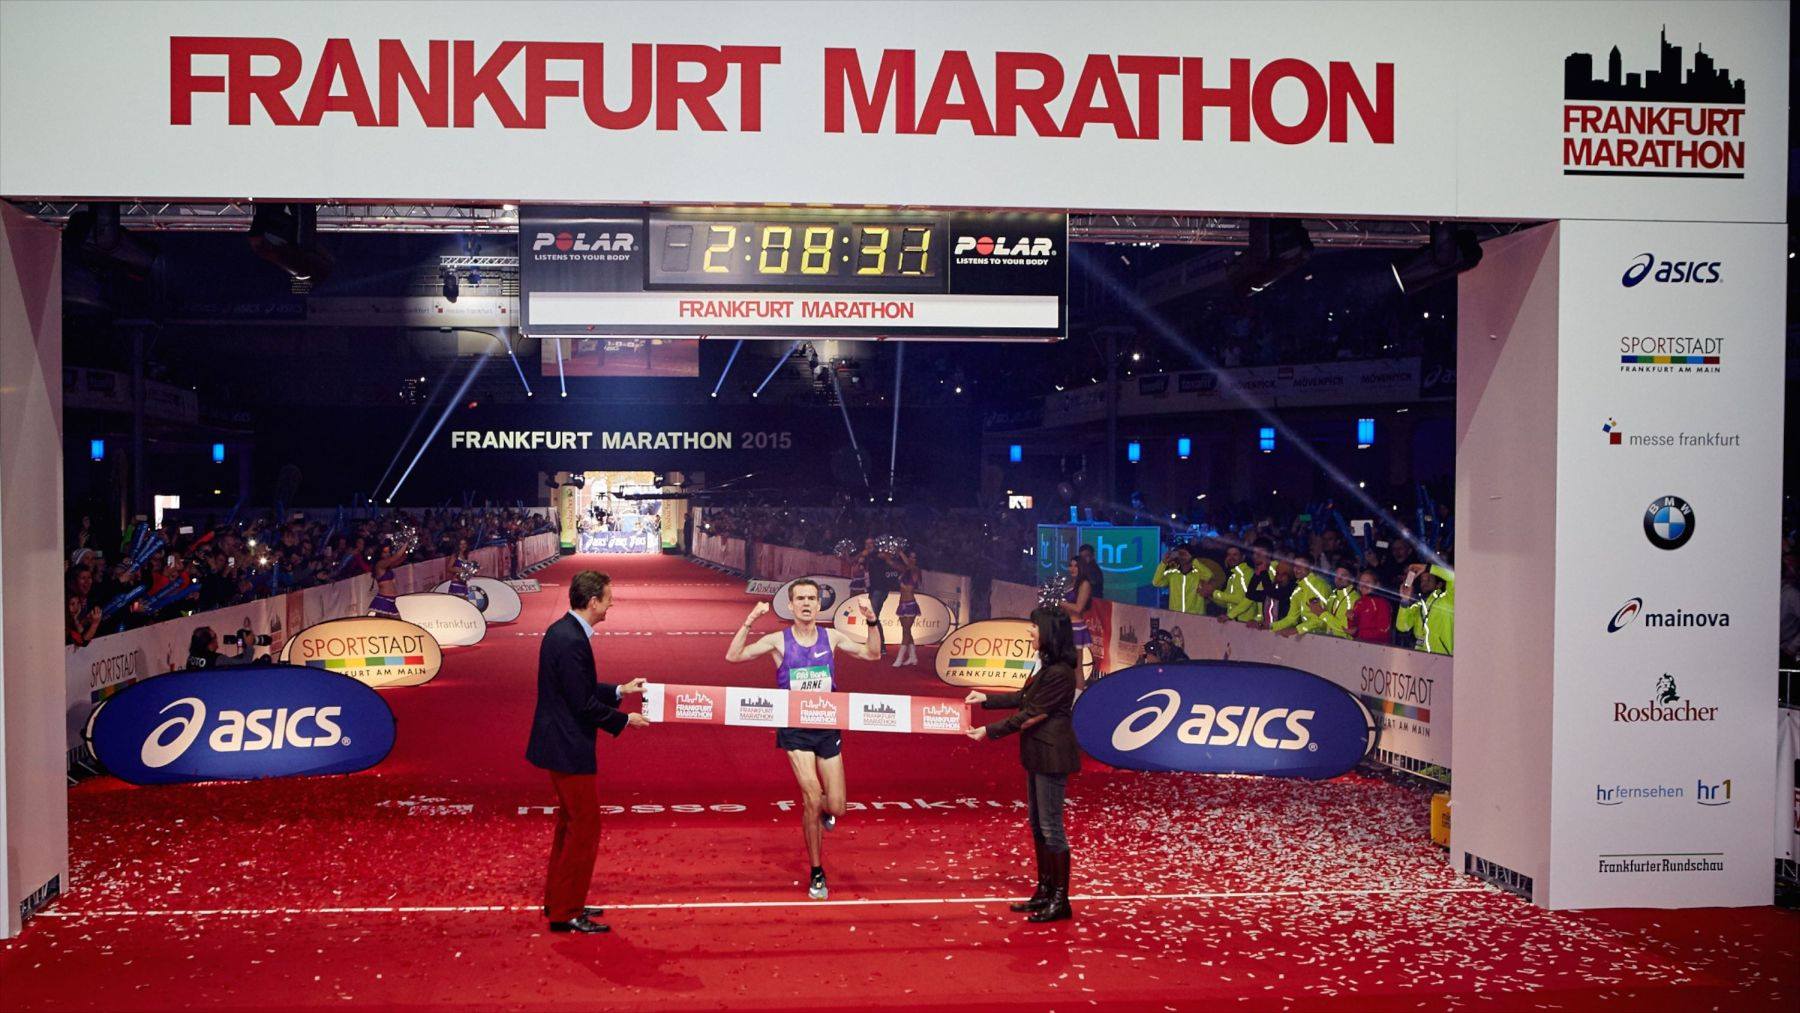 mit freundlicher Genehmigung von "Frankfurt Marathon"